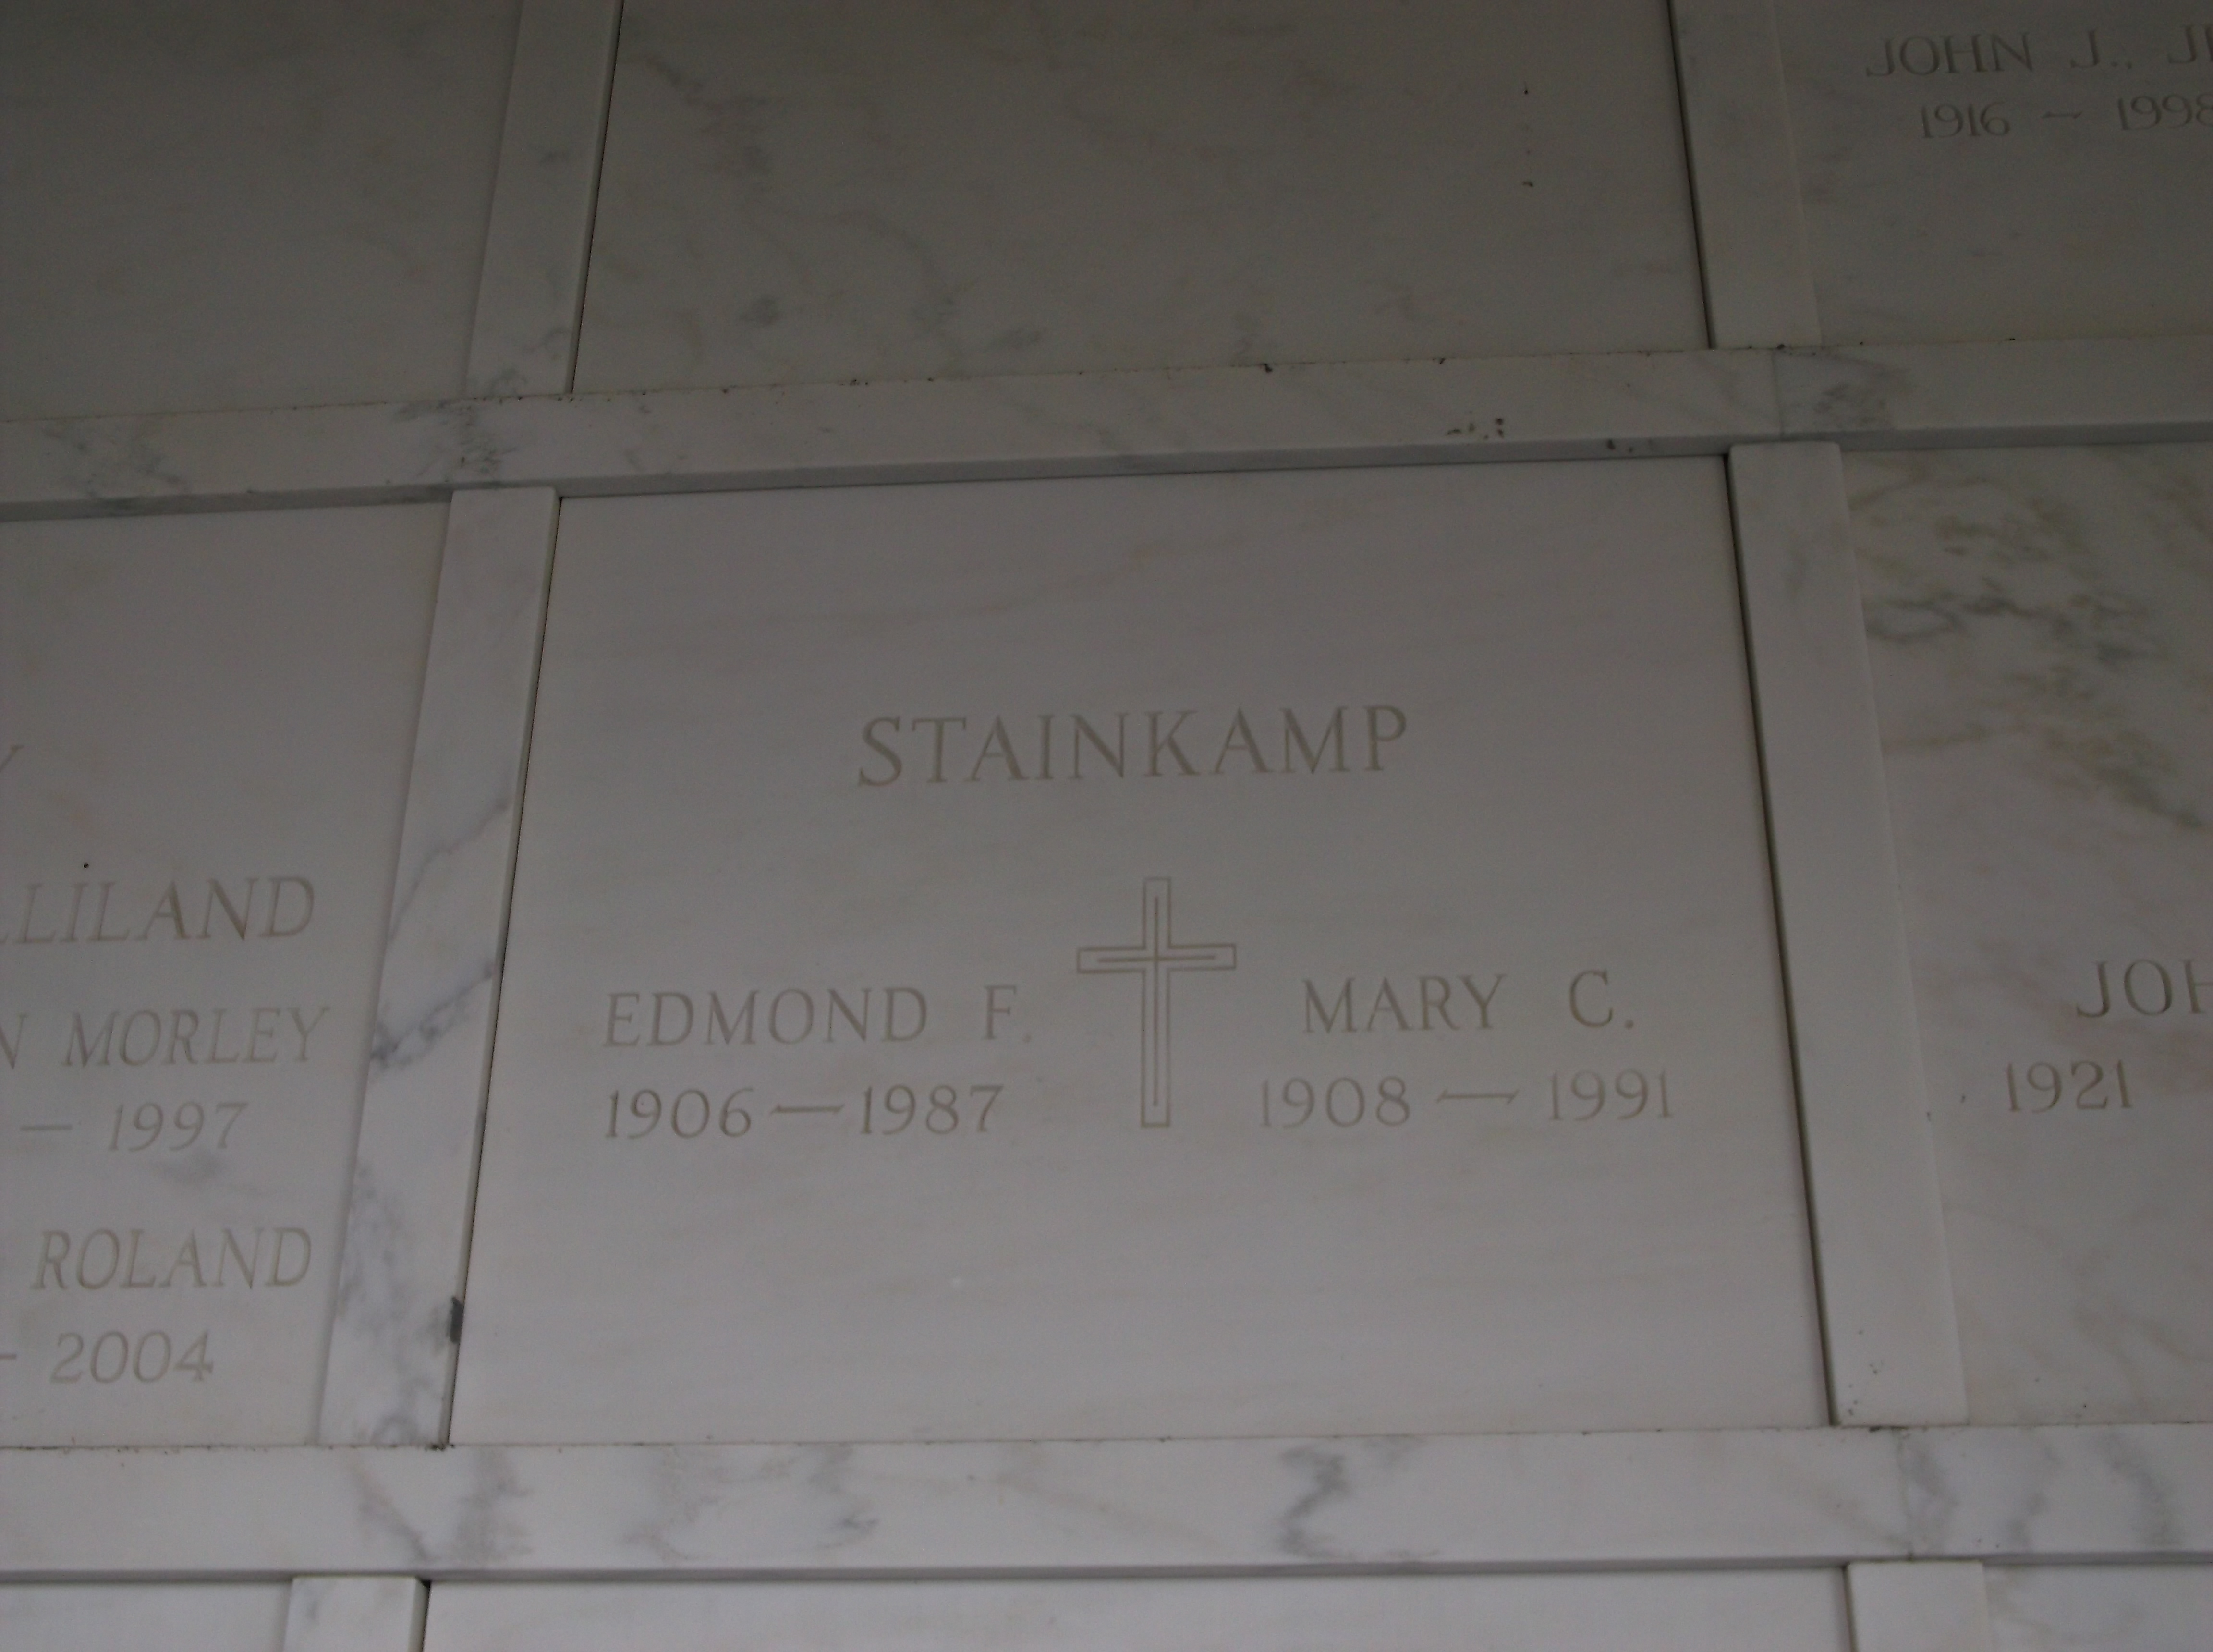 Mary C Stainkamp